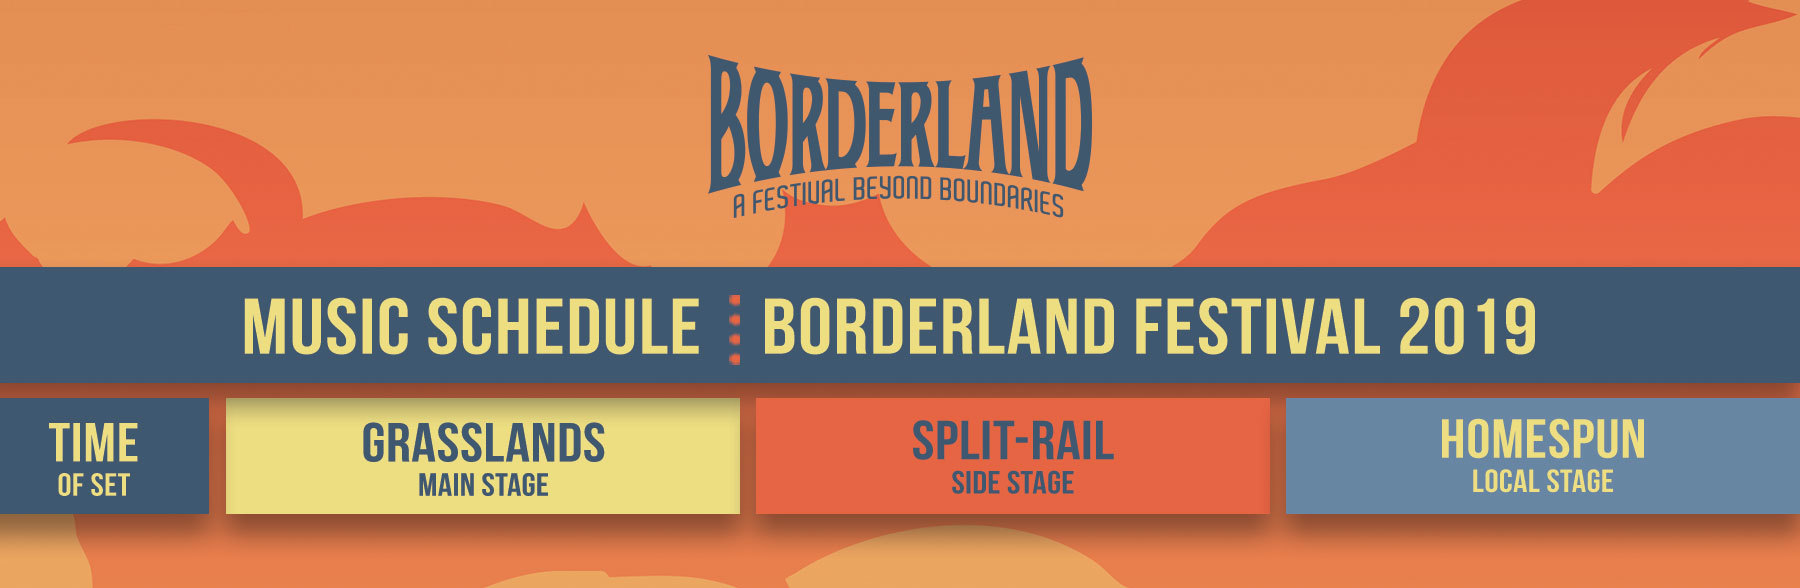 2019 Borderland Music Schedule